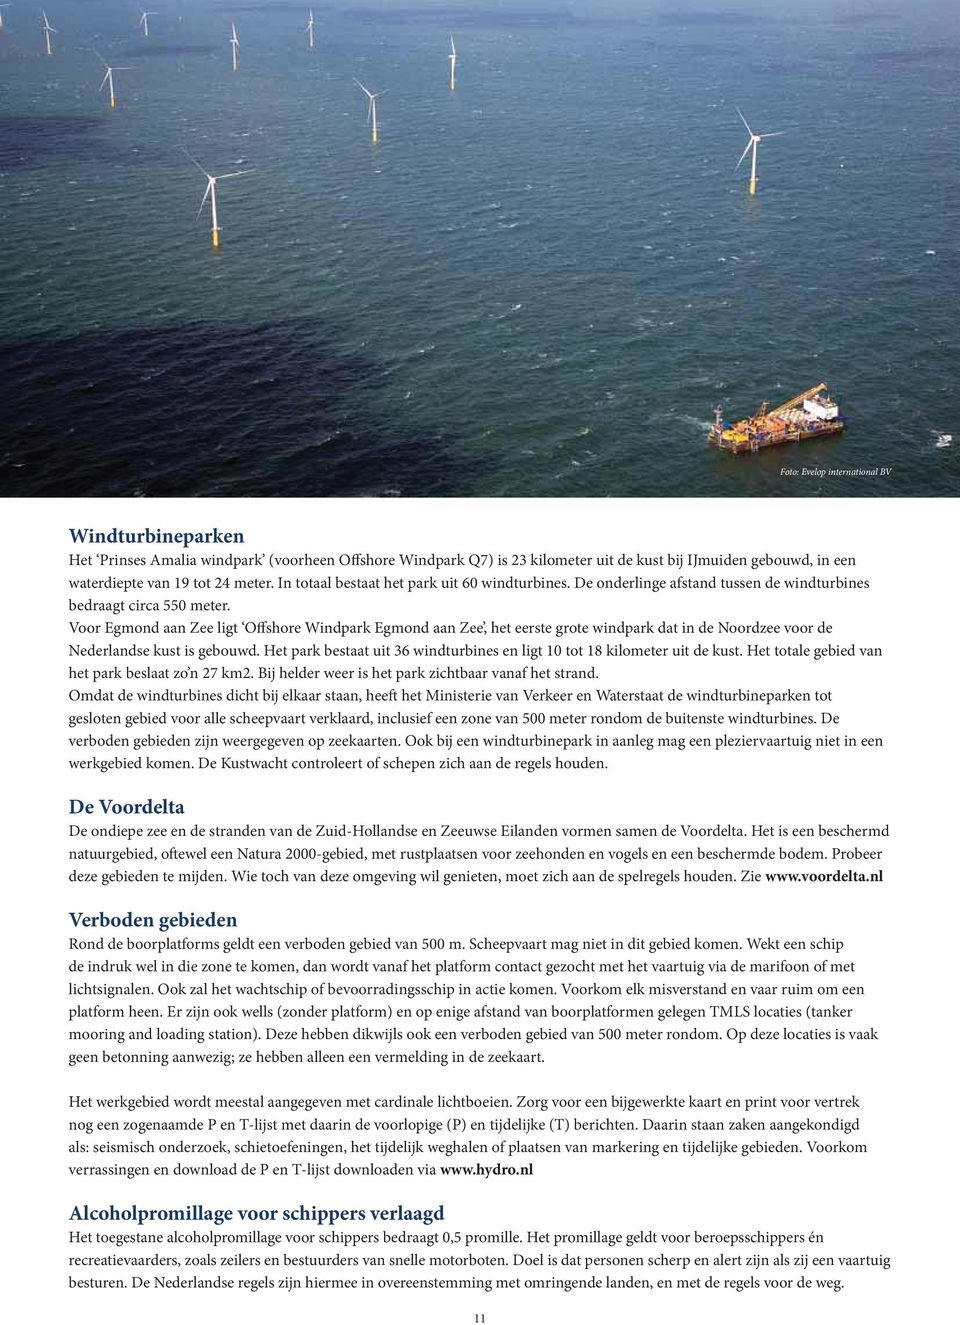 Voor Egmond aan Zee ligt Offshore Windpark Egmond aan Zee, het eerste grote windpark dat in de Noordzee voor de Nederlandse kust is gebouwd.